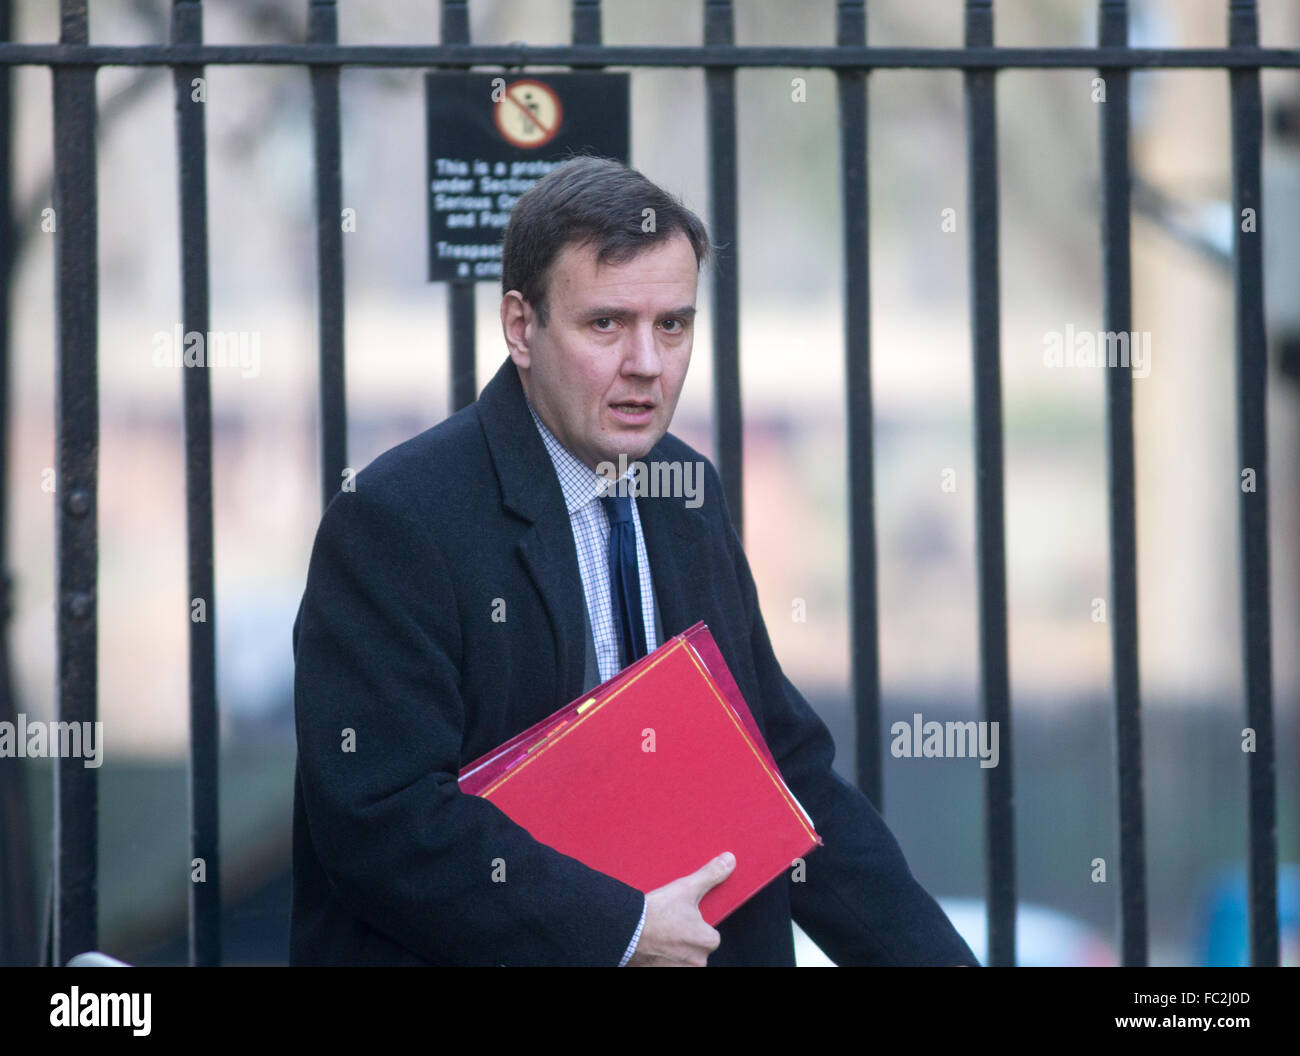 Greg manos,Secretario Jefe de la Tesorería,llega a Downing Street durante una reunión del gabinete,Él es MP para Chelsea y Fulham Foto de stock